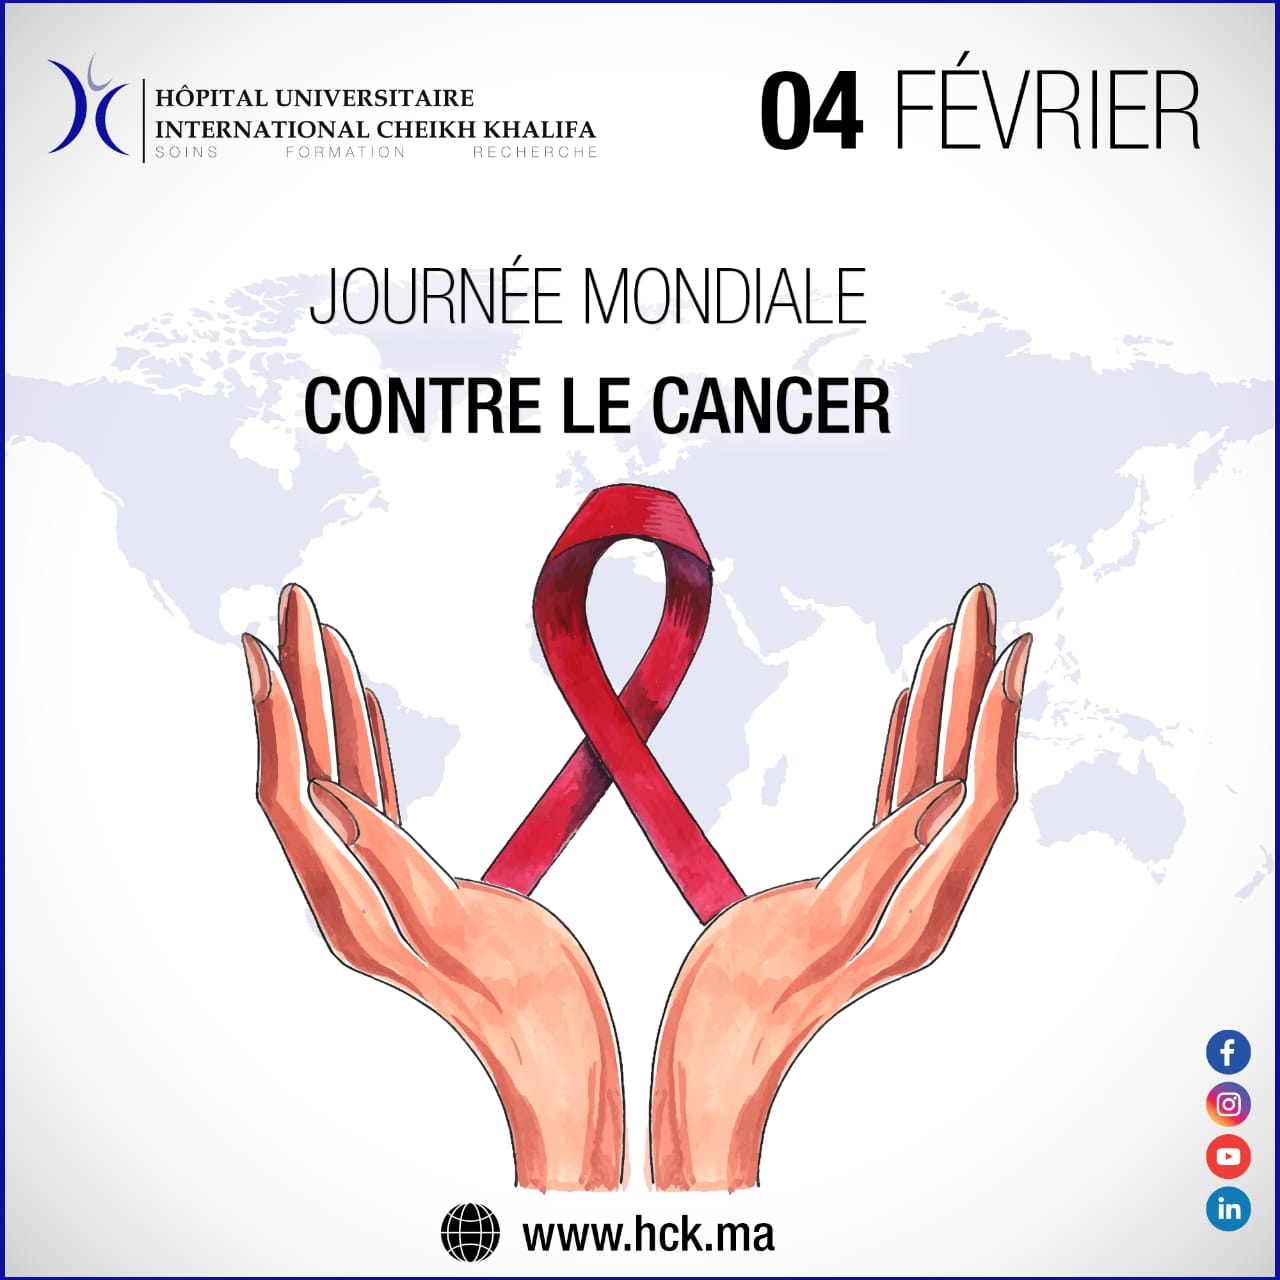 04 FÉVRIER : JOURNÉE MONDIALE CONTRE LE CANCER